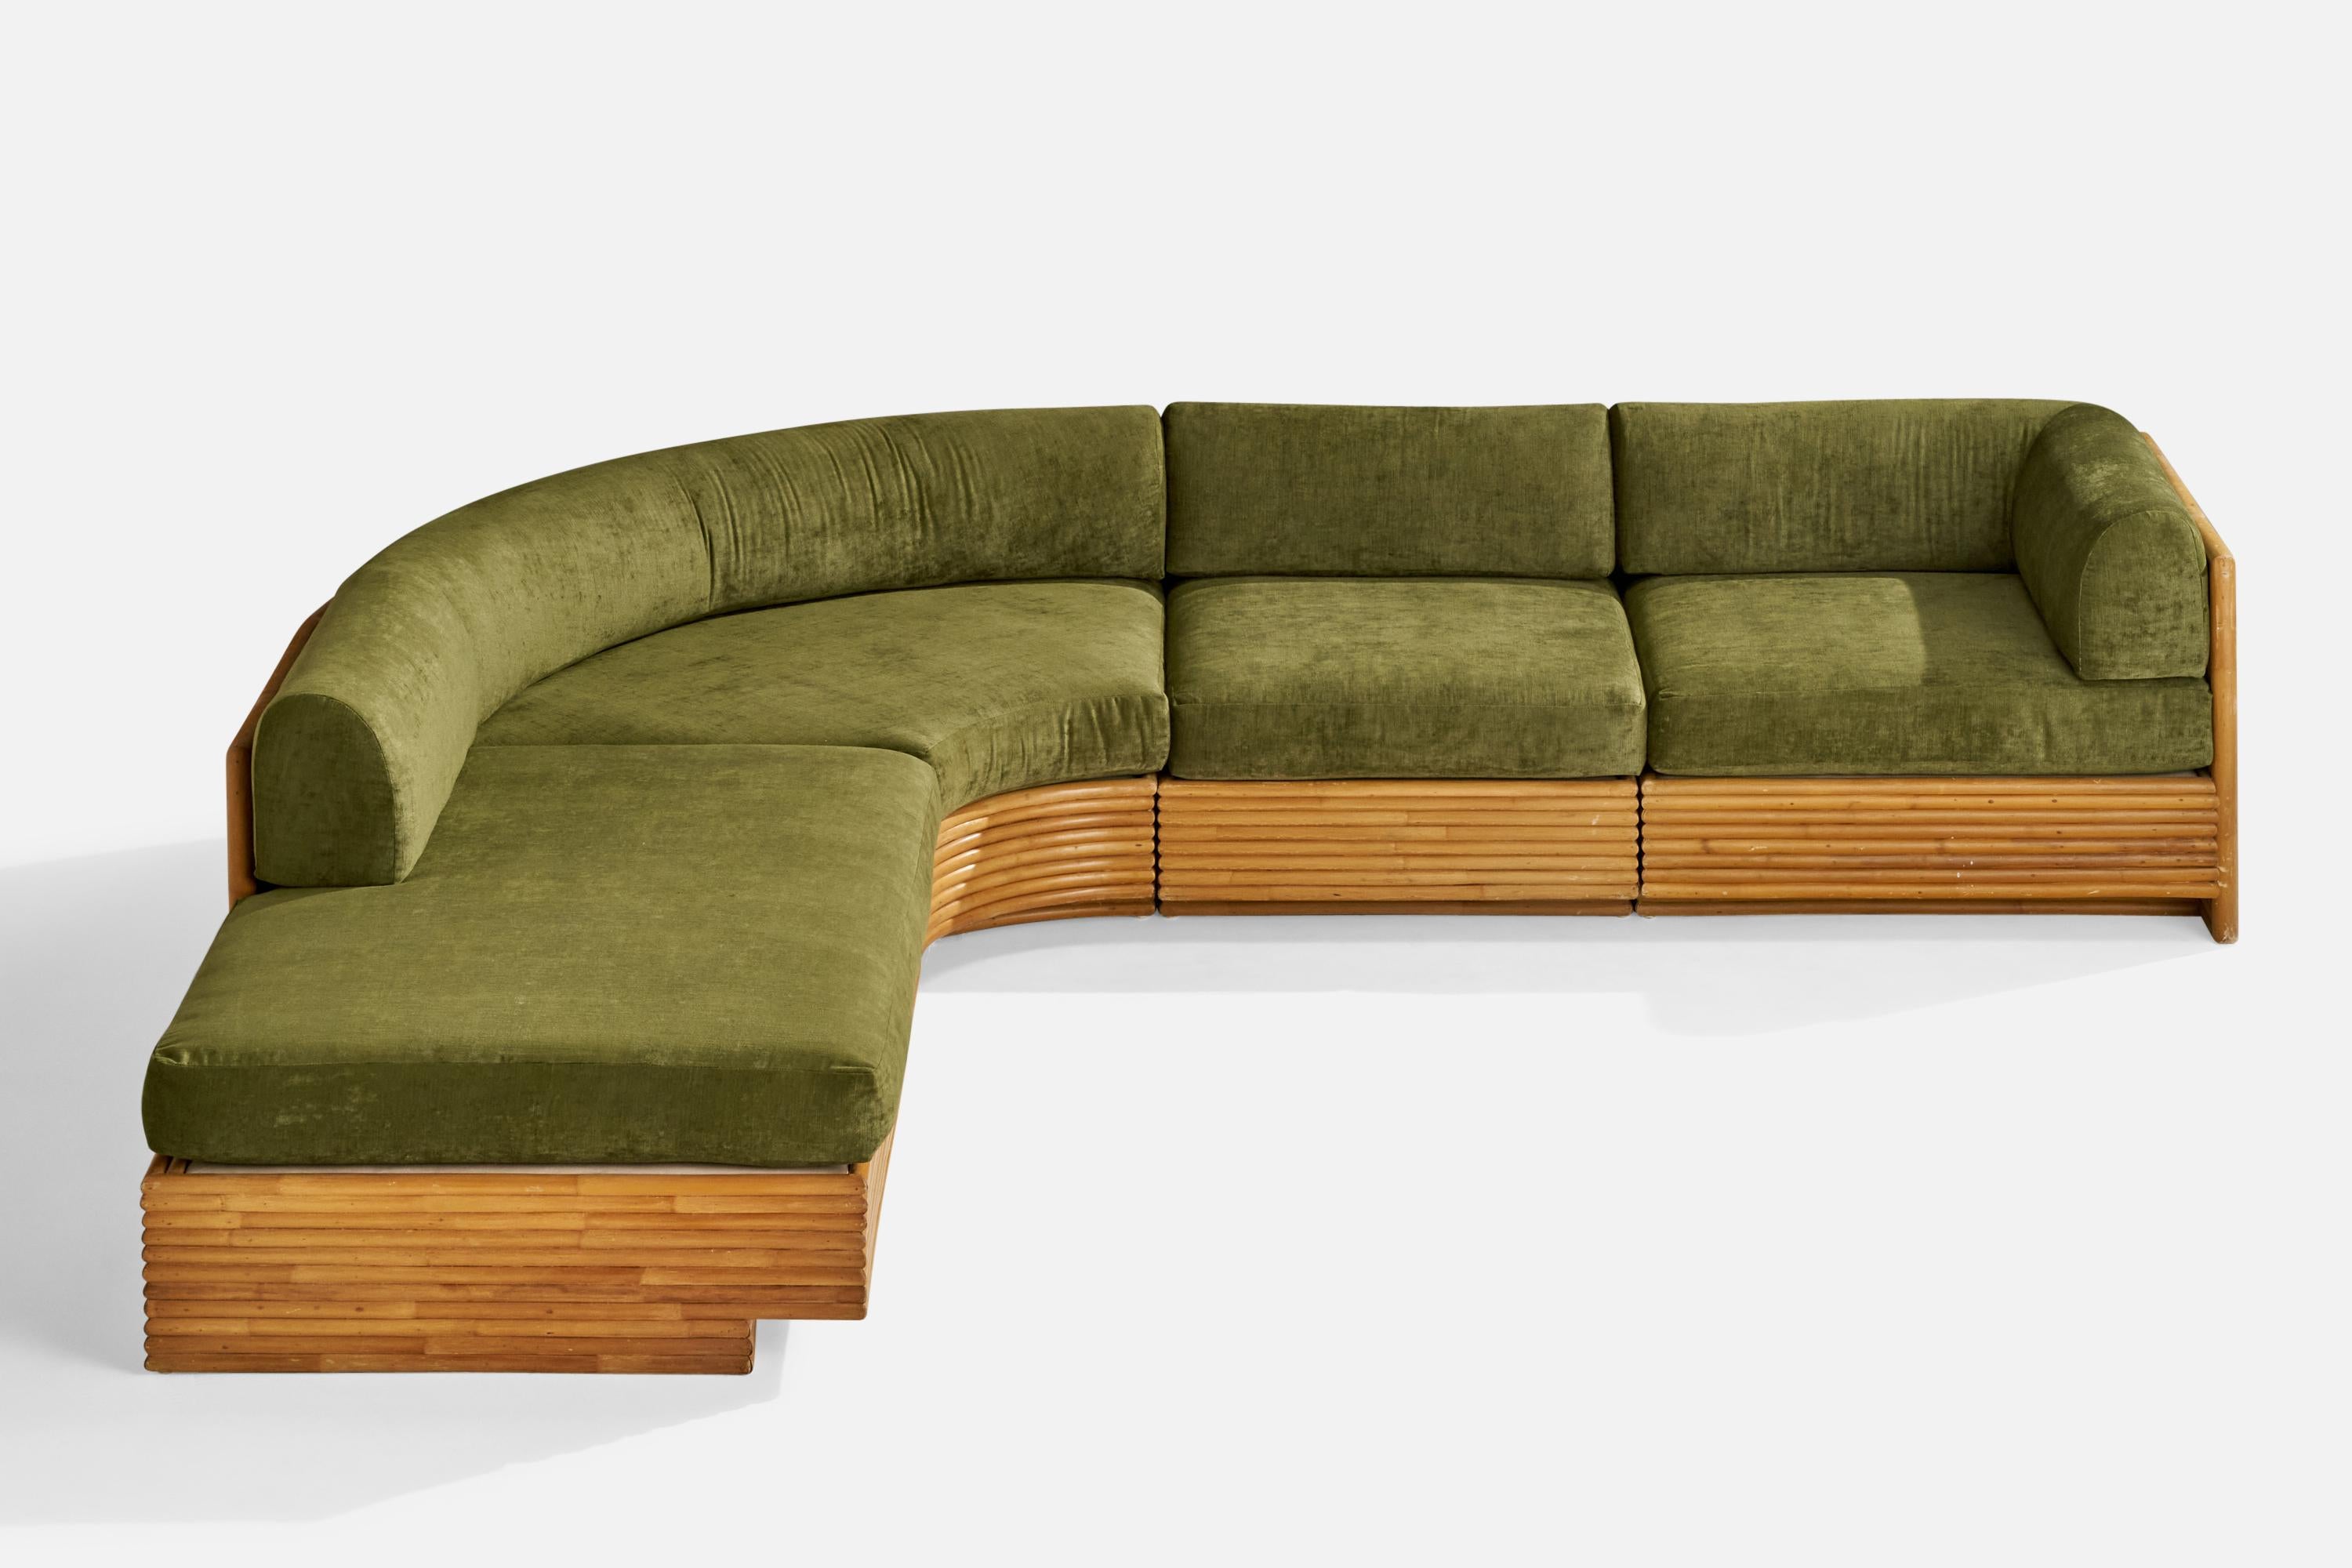 Velours Directional Furniture, canapé sectionnel, bambou, velours, États-Unis, années 1970